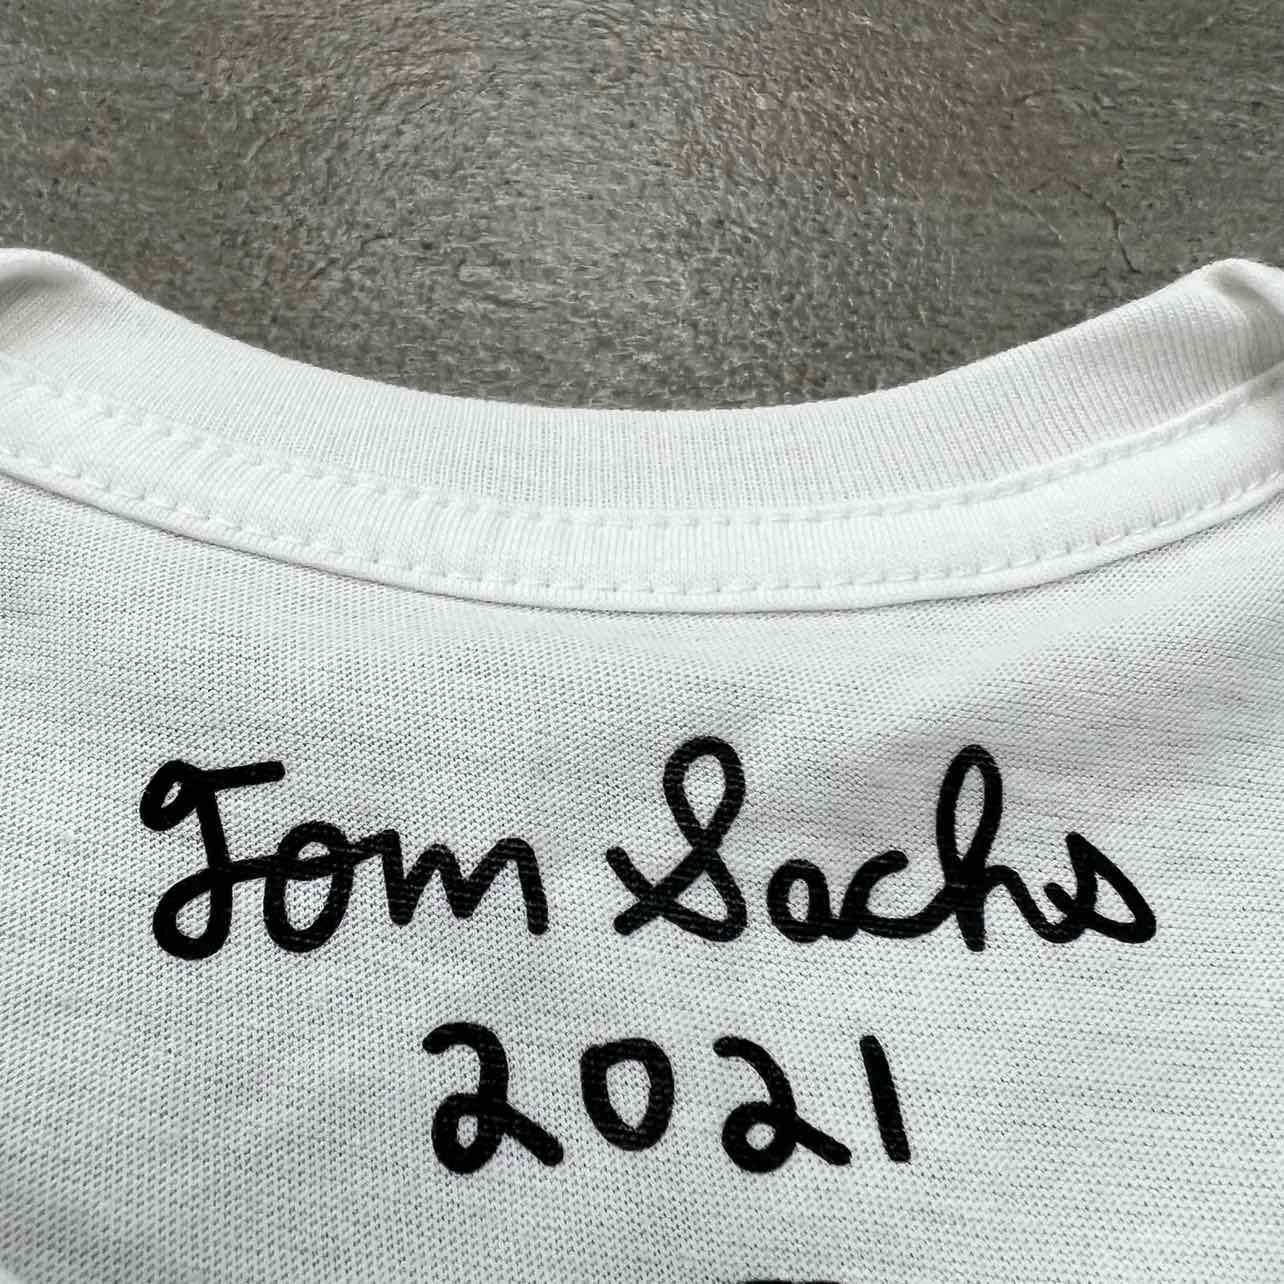 Tom Sachs T-Shirt "SSENSE" White New Size L